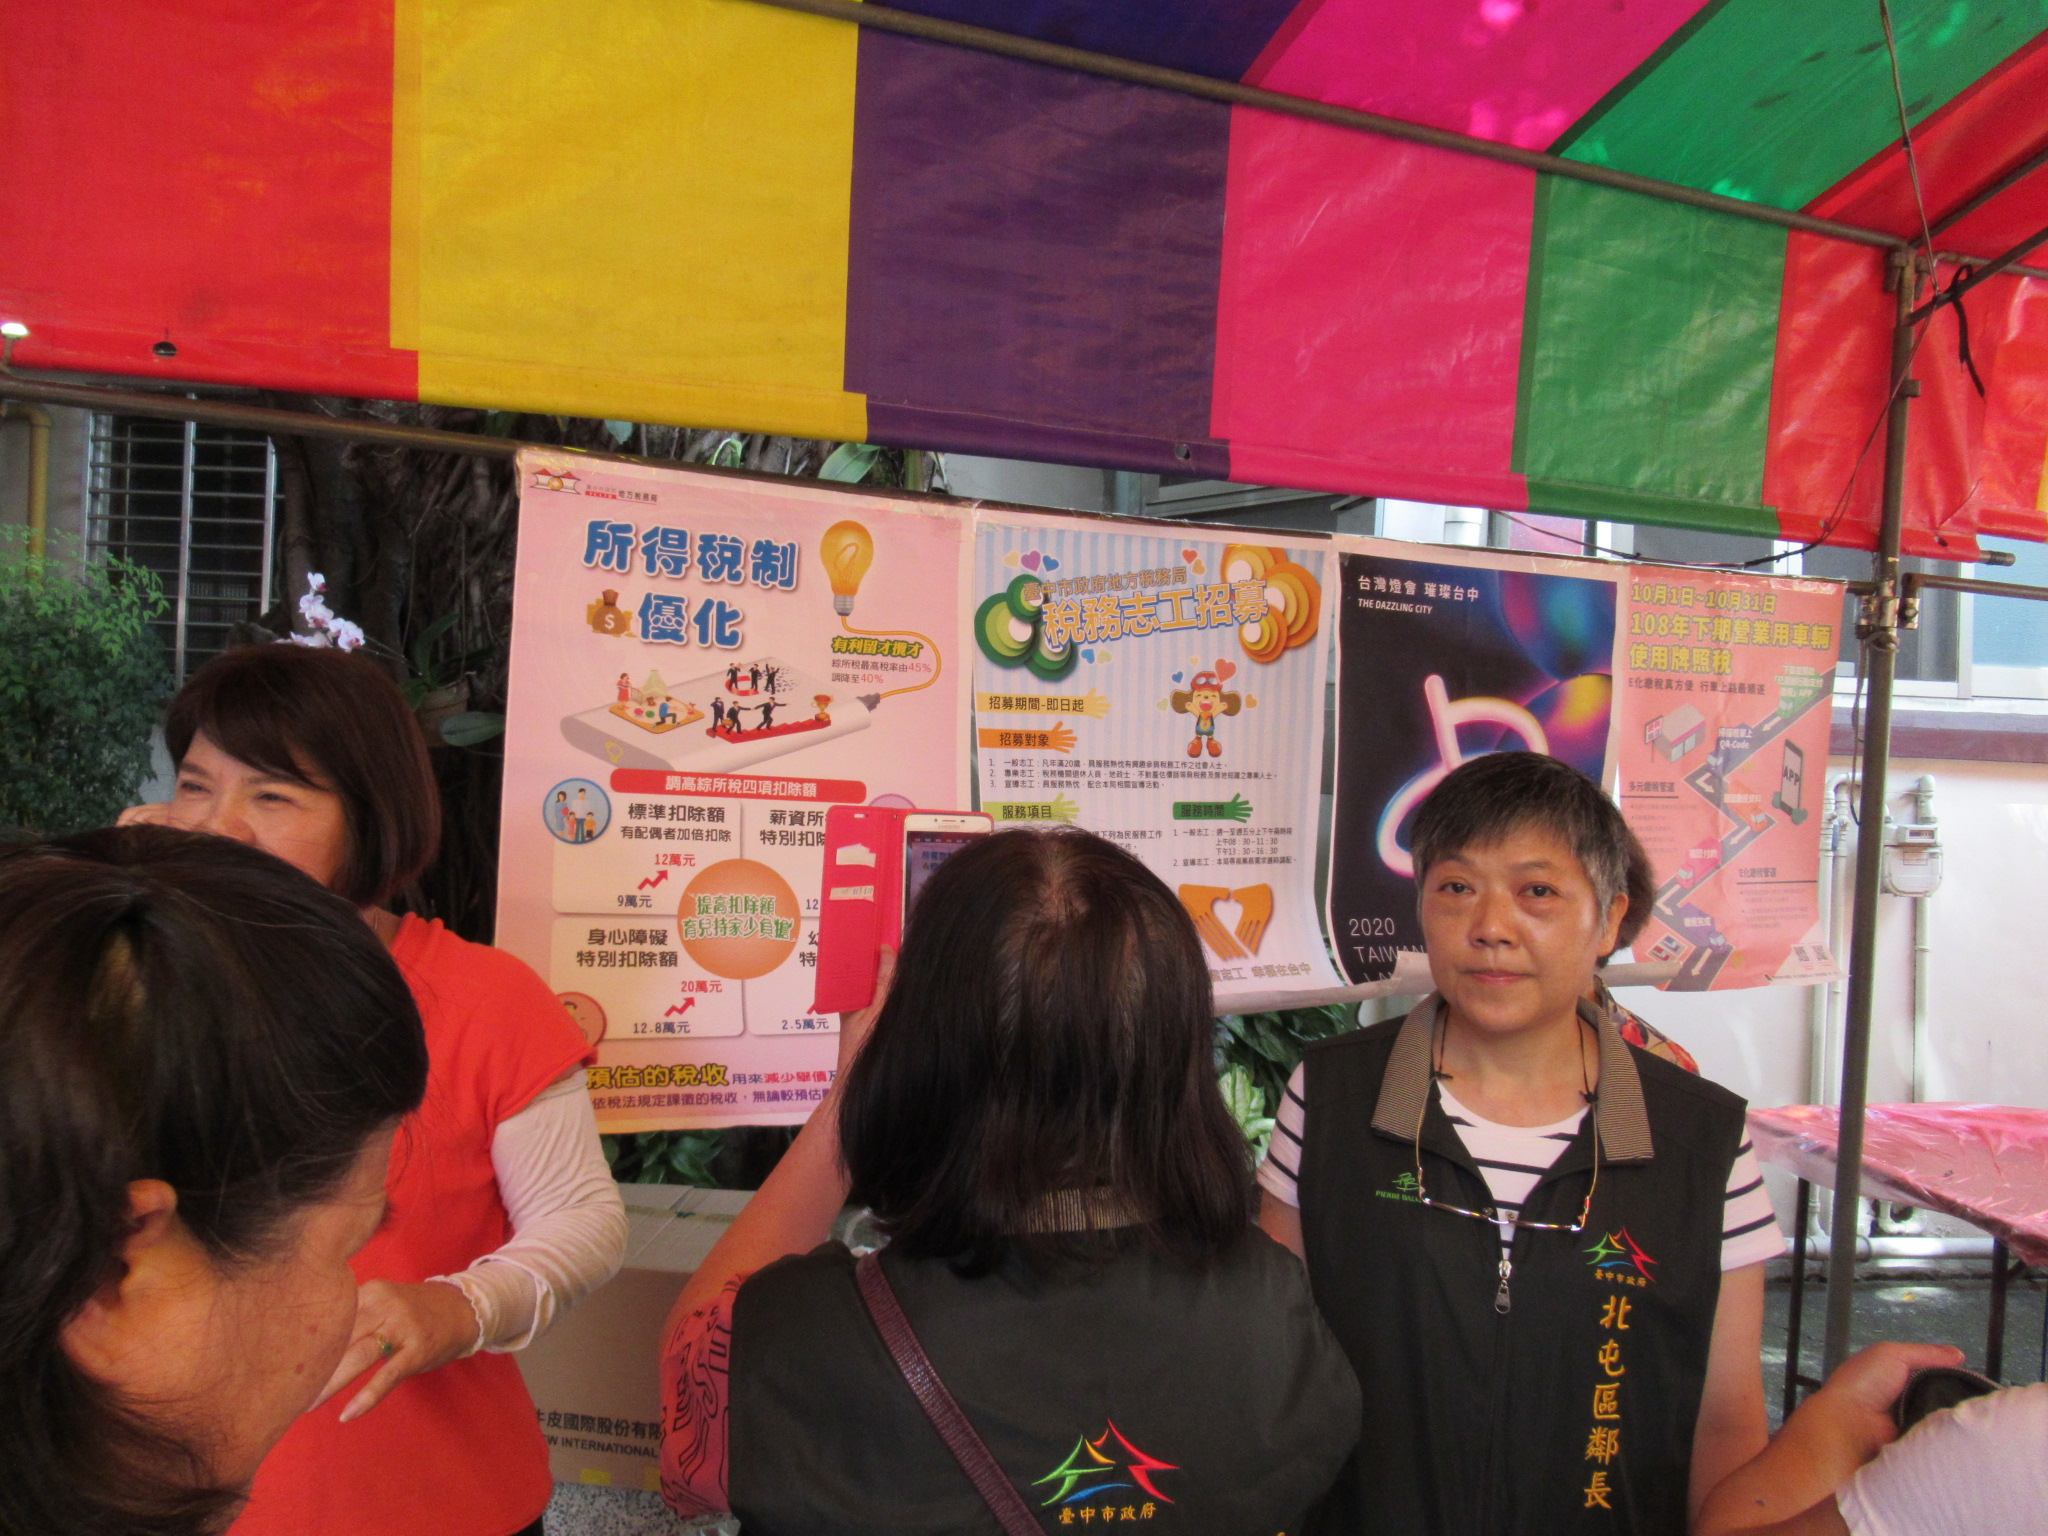 現場張貼臺灣燈會在臺中、所得稅優化等宣導海報，提高宣導資訊曝光度。